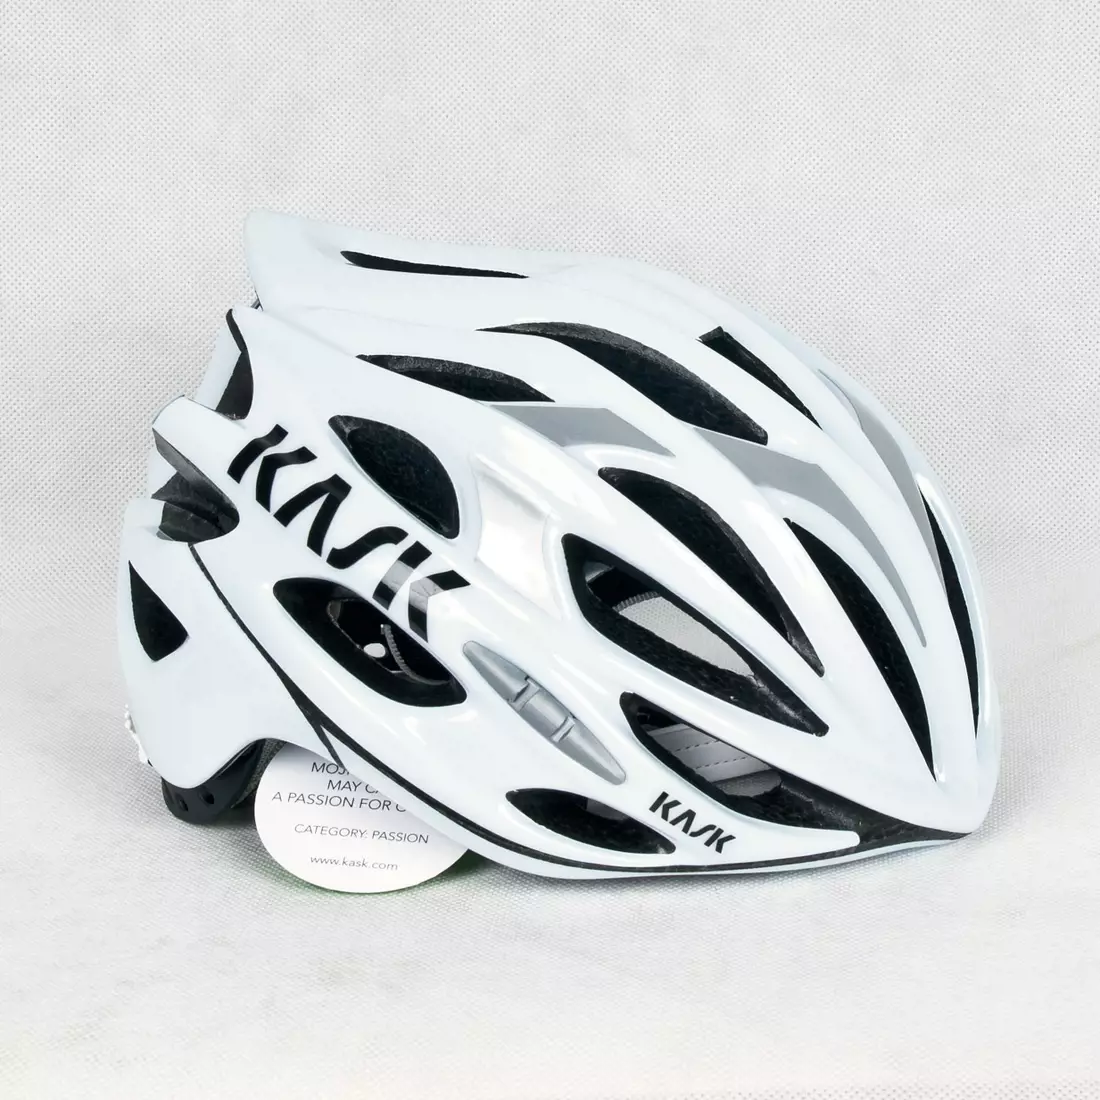 CASCA MOJITO - casca de bicicleta CHE00044.203 culoare: alb